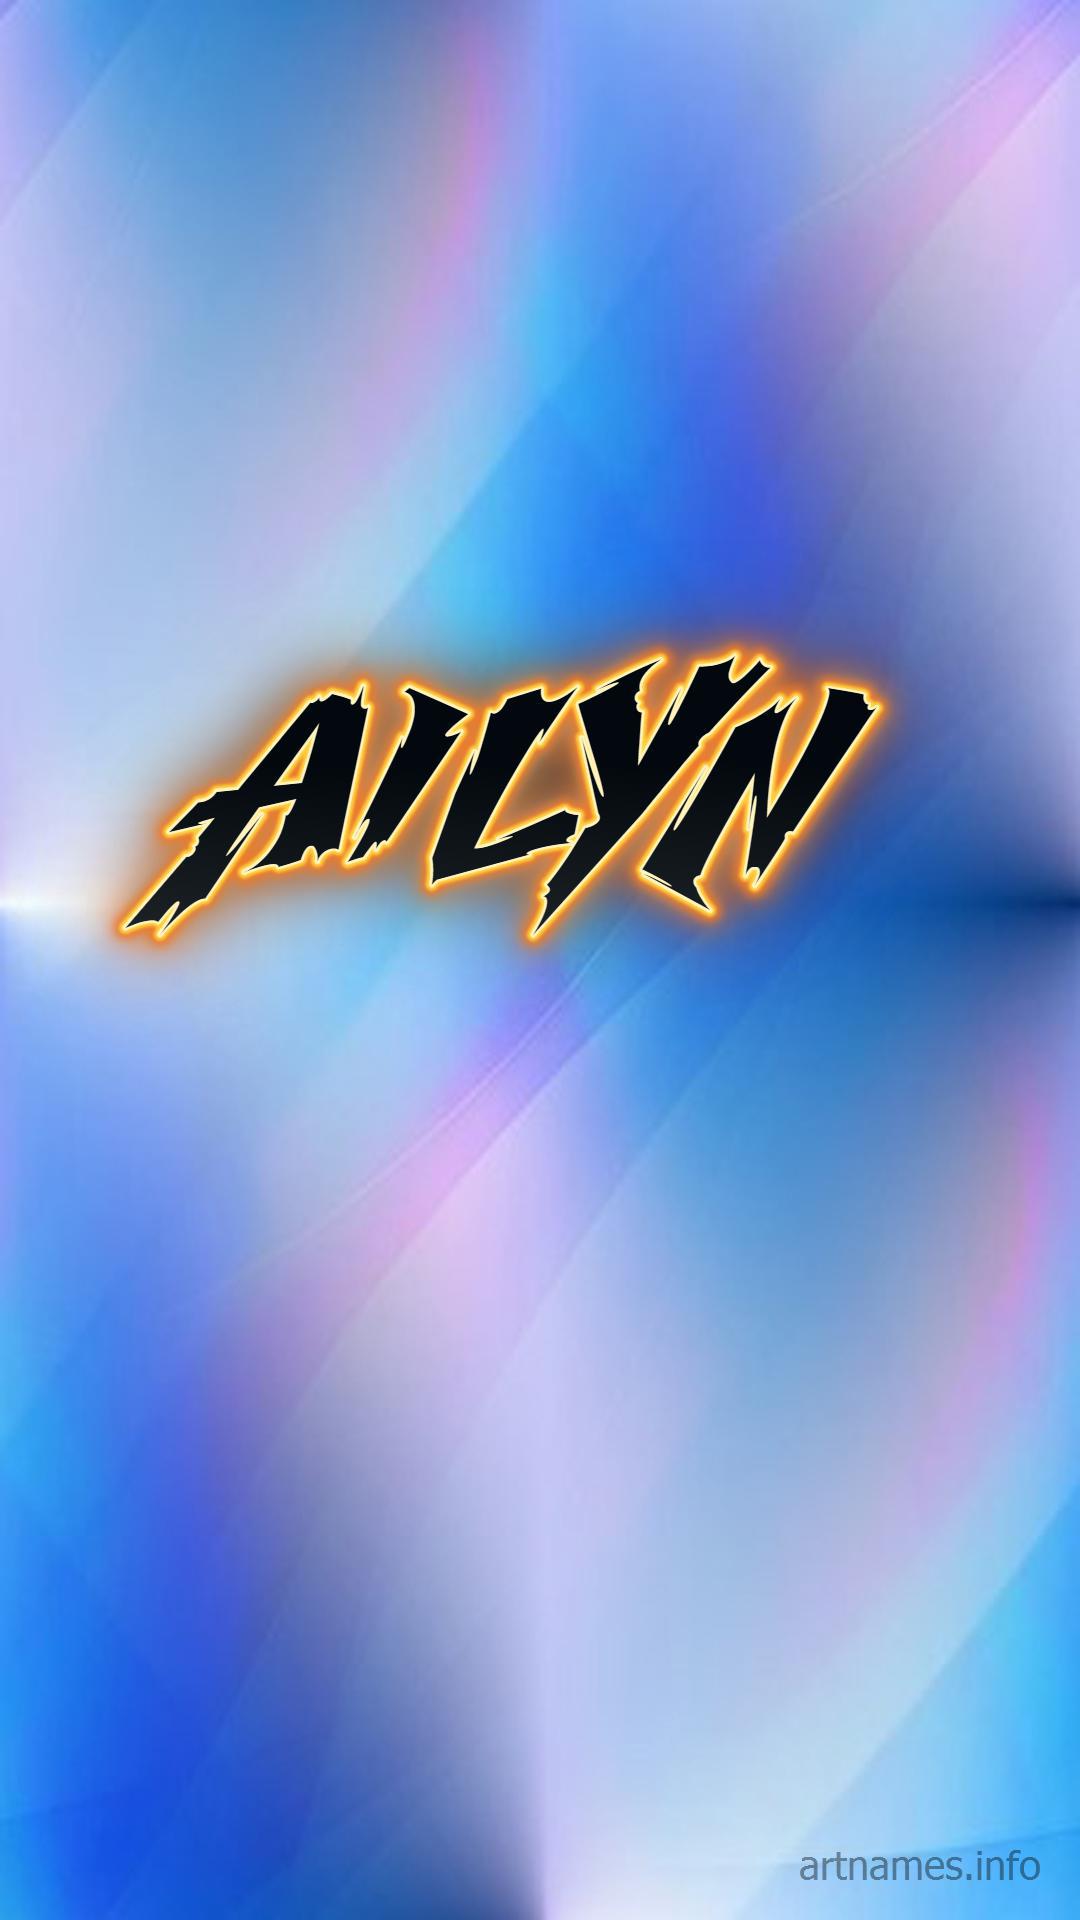 Ailyn As A Art Name Wallpaper Artnames